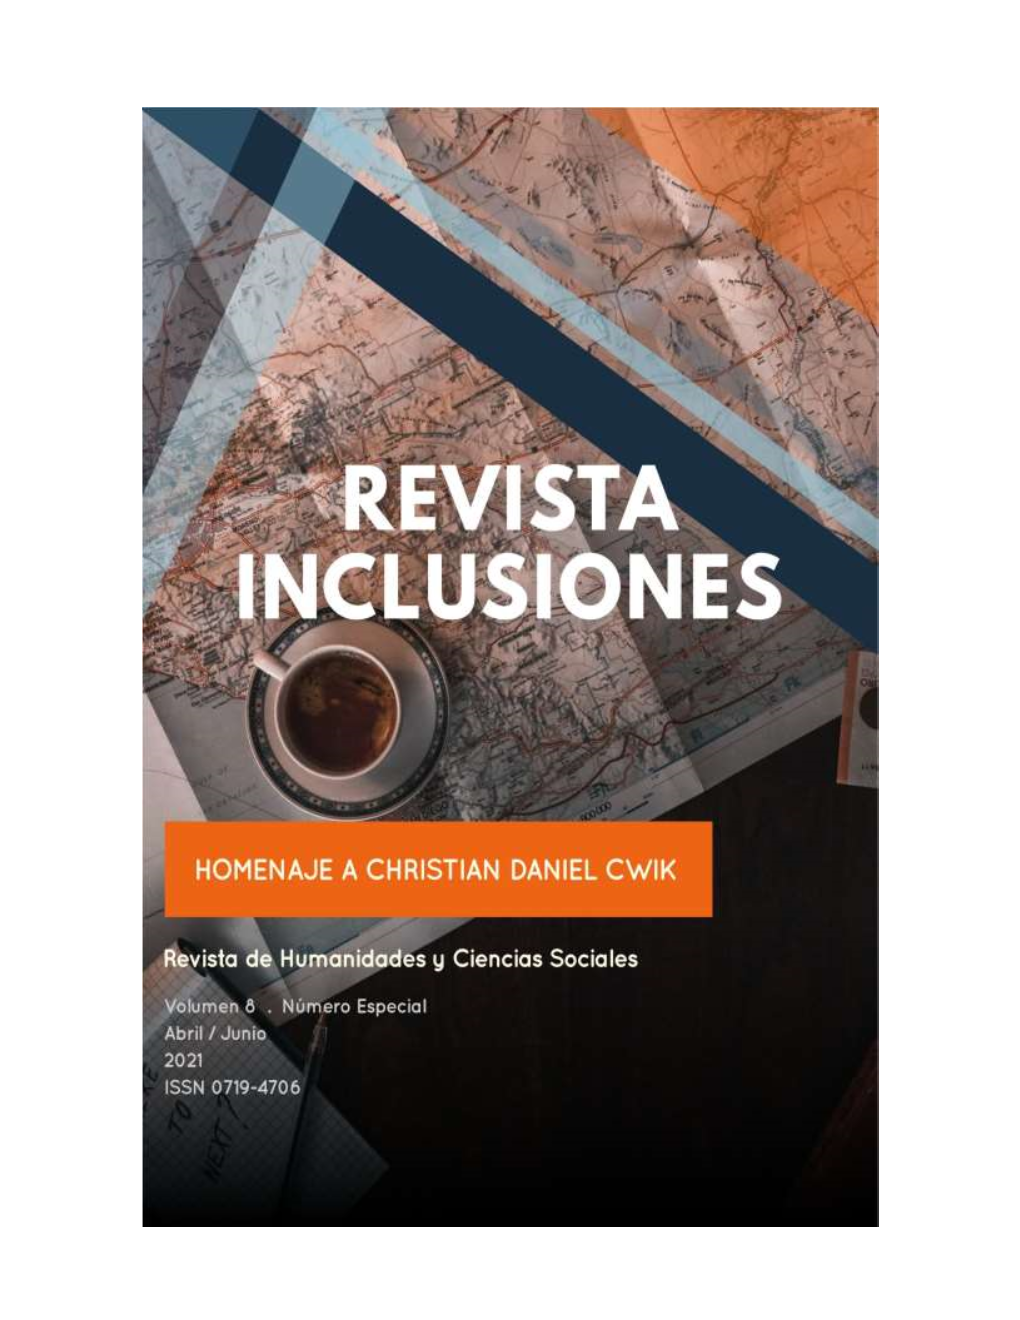 Revista Inclusiones Issn 0719-4706 Volumen 8 – Número Especial – Abril/Junio 2021